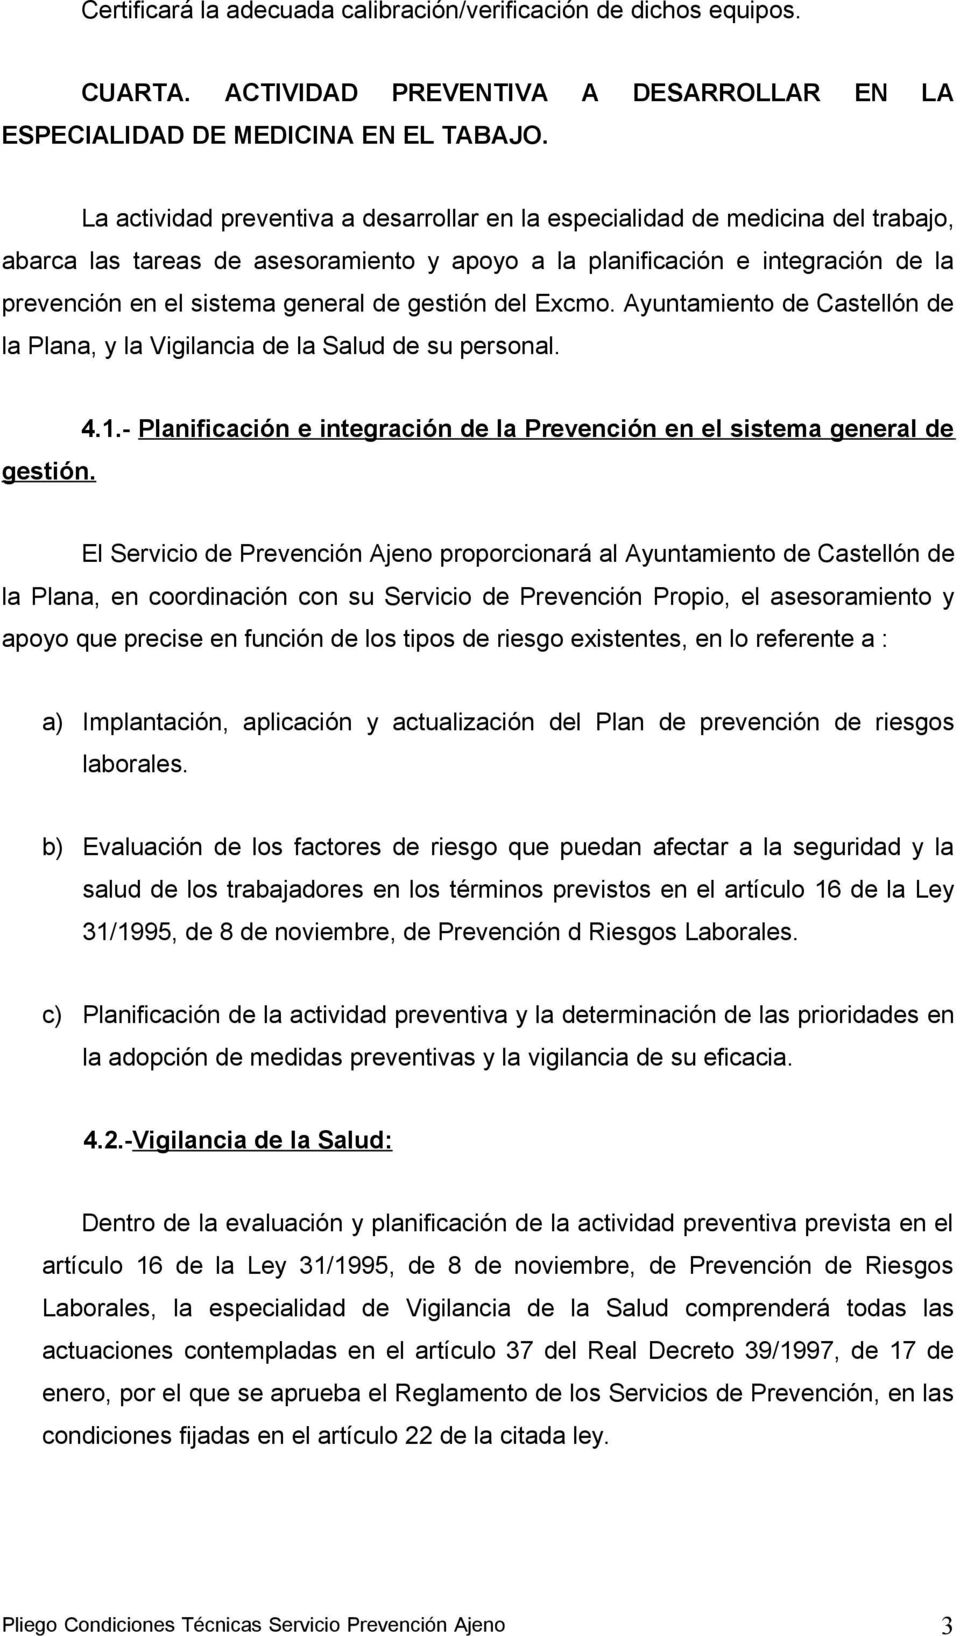 gestión del Excmo. Ayuntamiento de Castellón de la Plana, y la Vigilancia de la Salud de su personal. gestión. 4.1.